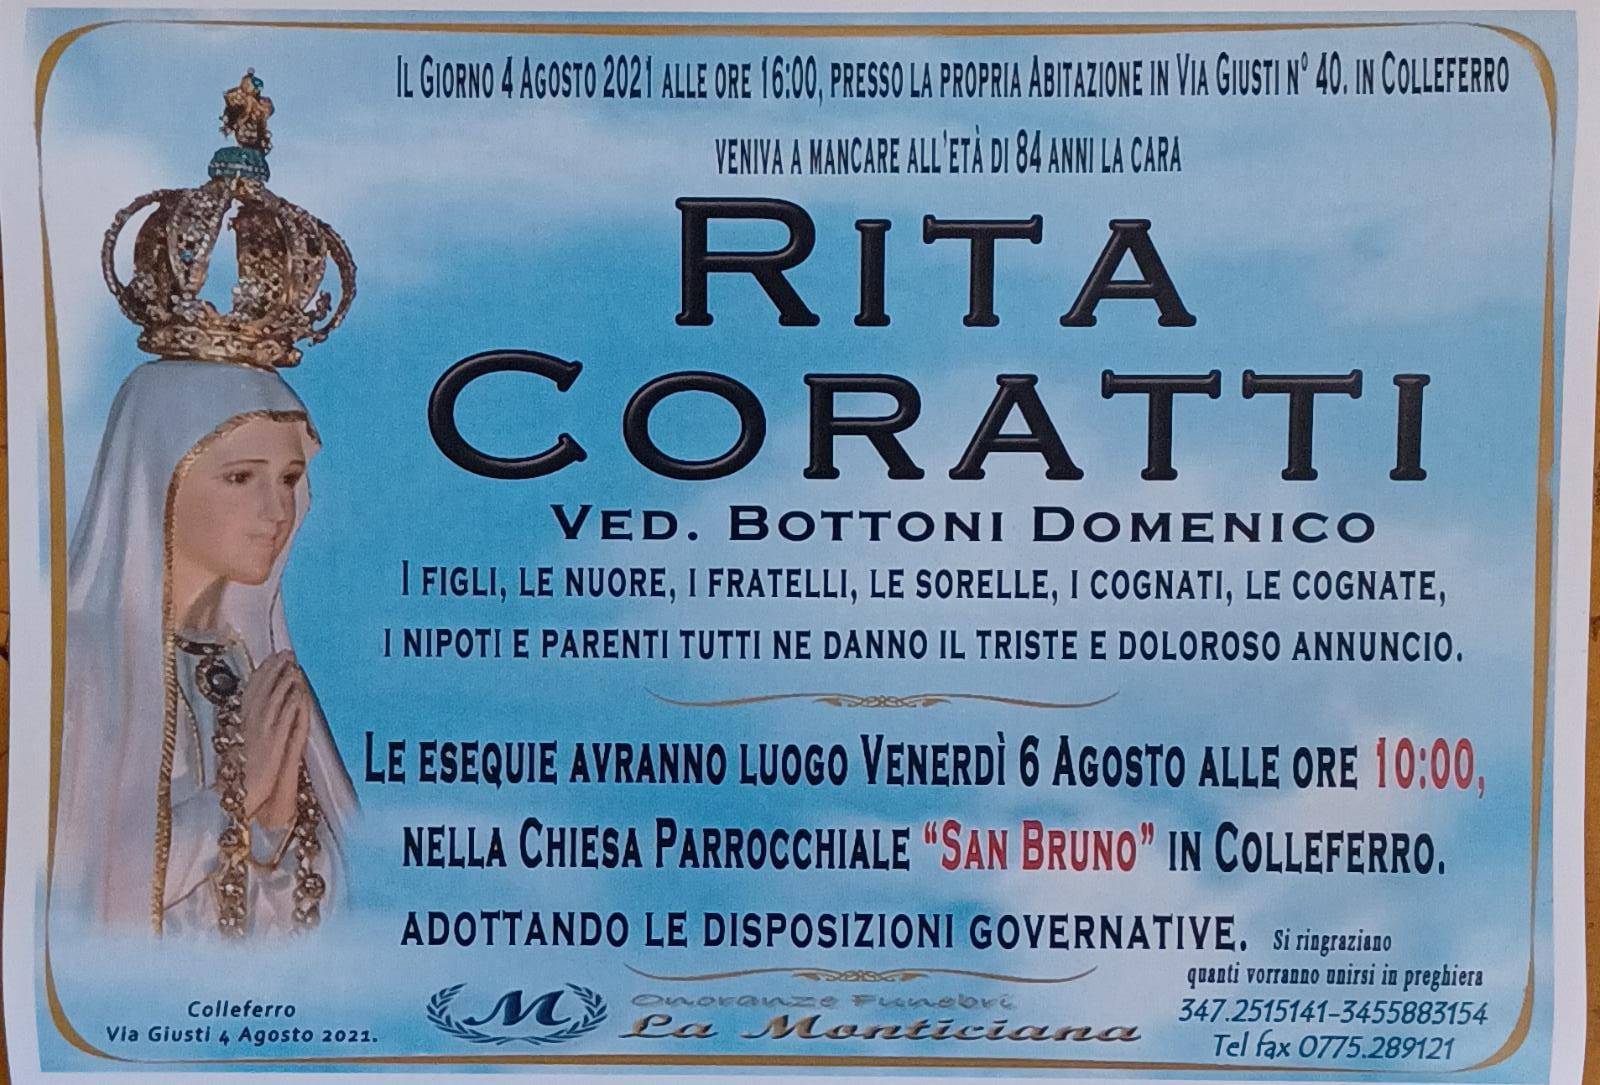 Rita Coratti